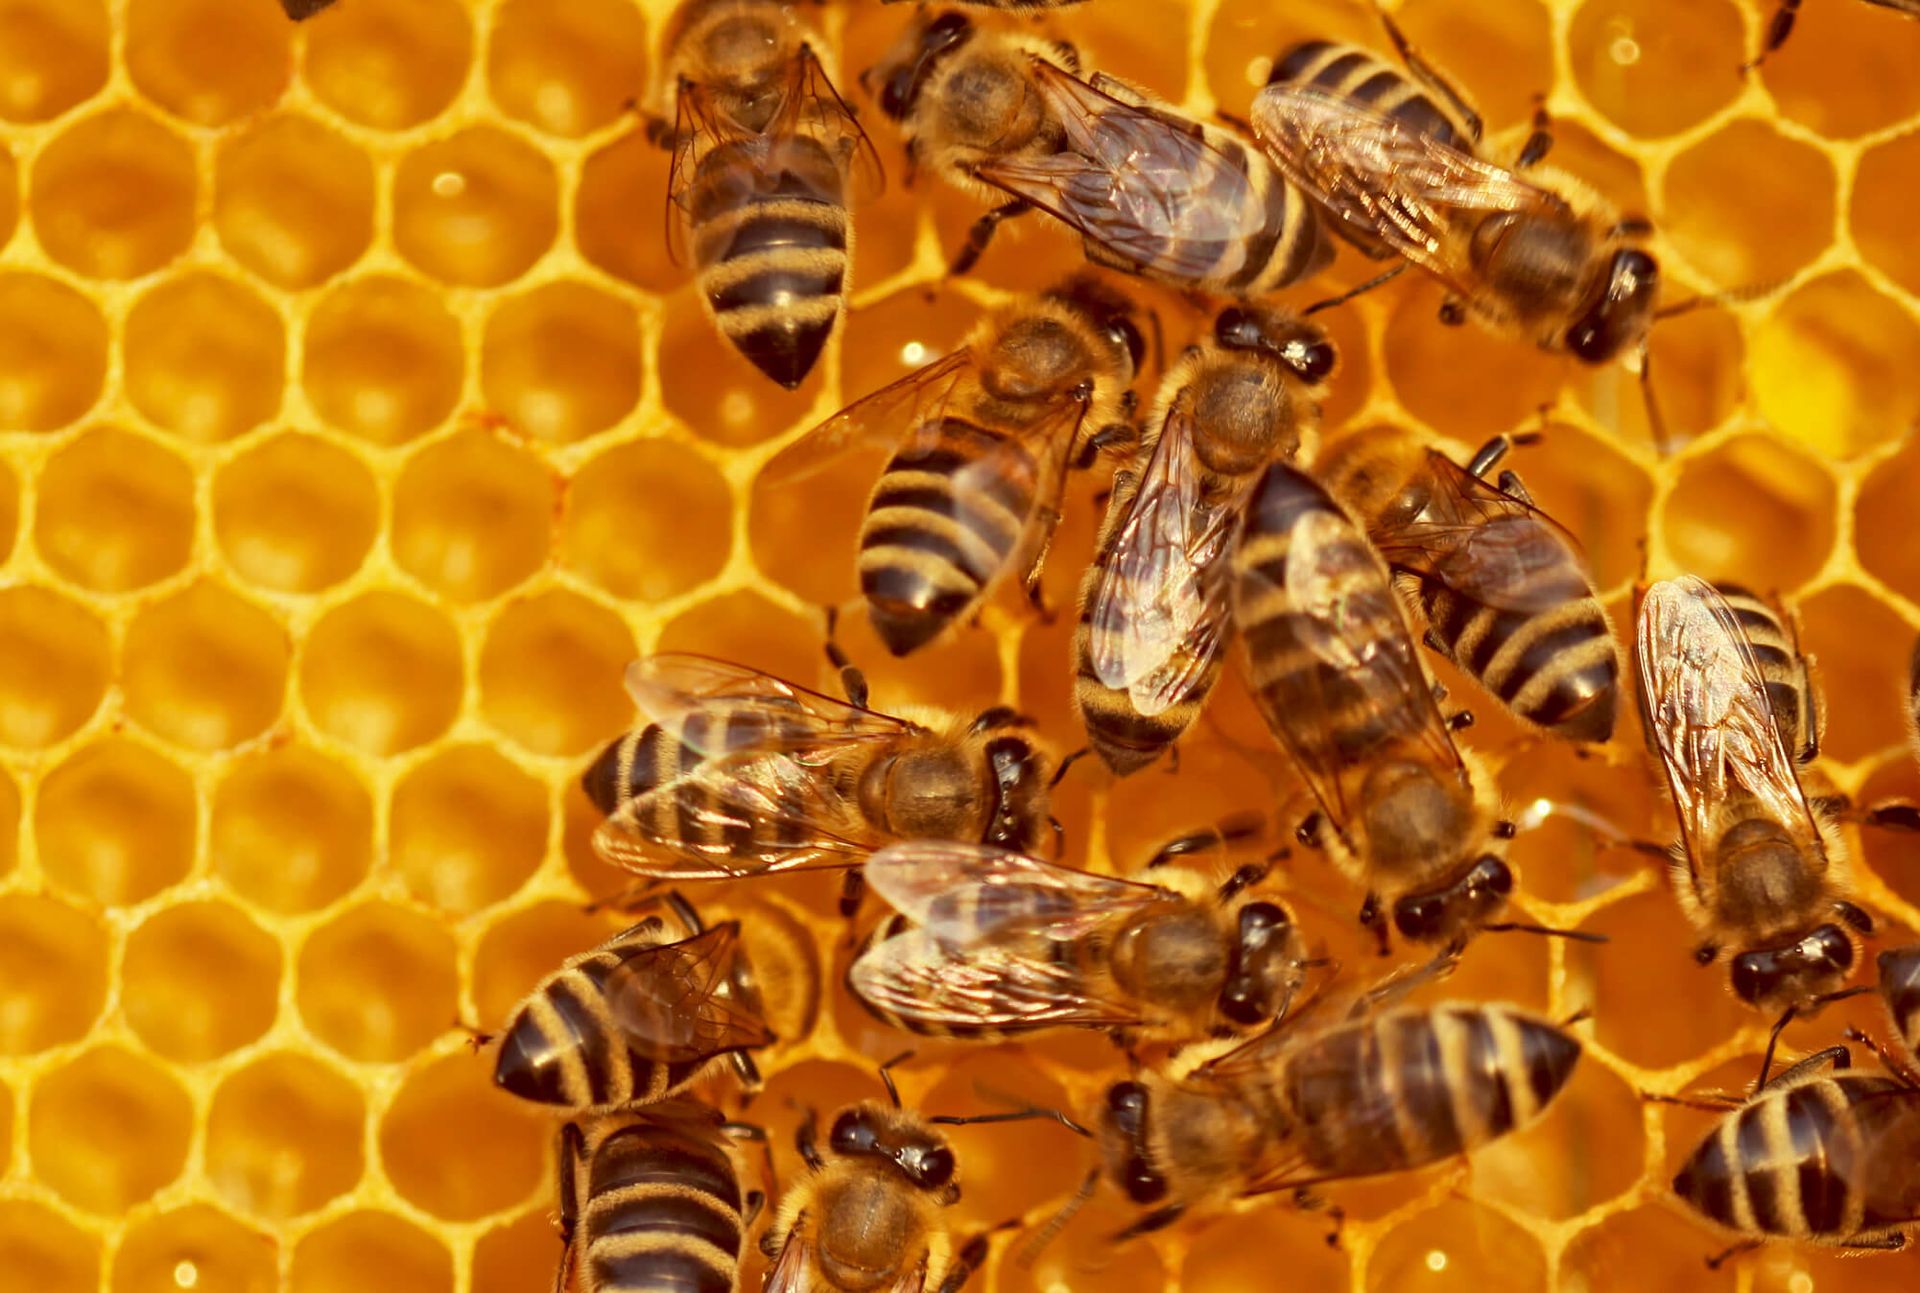 Abeilles dans leur ruche